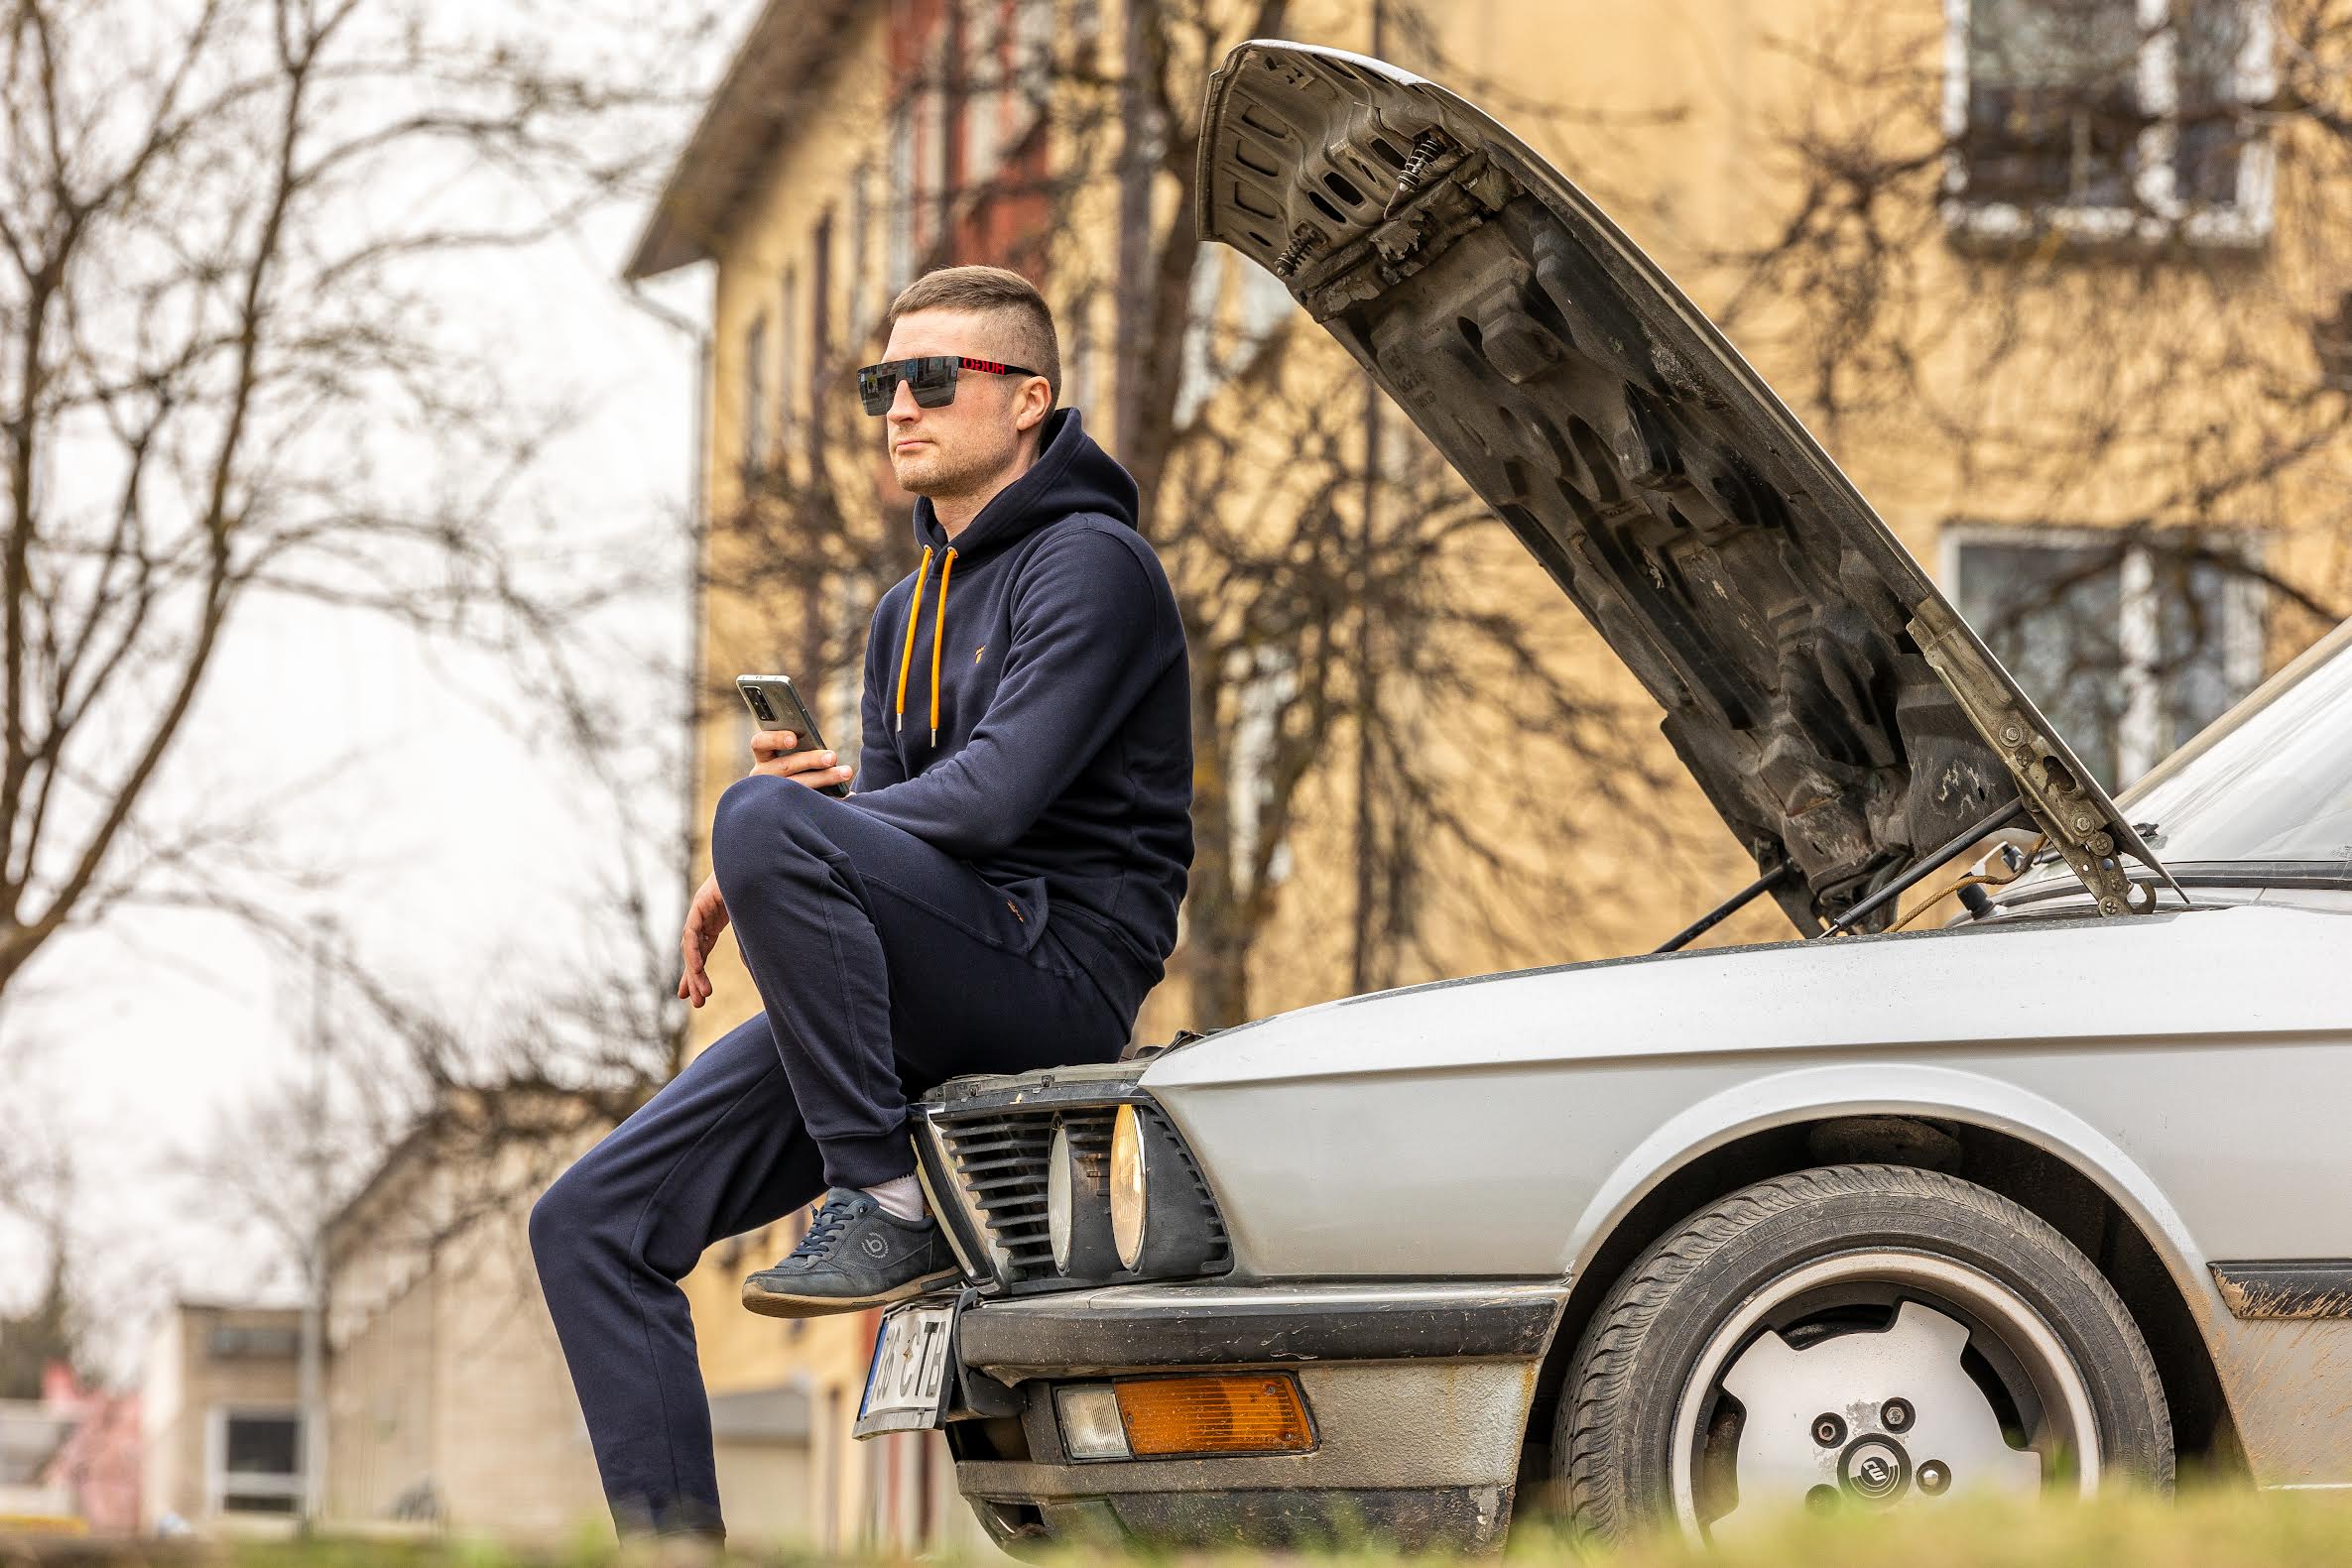 Võrukas Marti Rammul on huvitatud Lõuna-Eestis kasutult seisvate sõidukite endale ostmisest. Automüüjale lubab ta, et sõiduki omanikuvahetus saab korrektselt vormistatud. Foto: AIGAR NAGEL